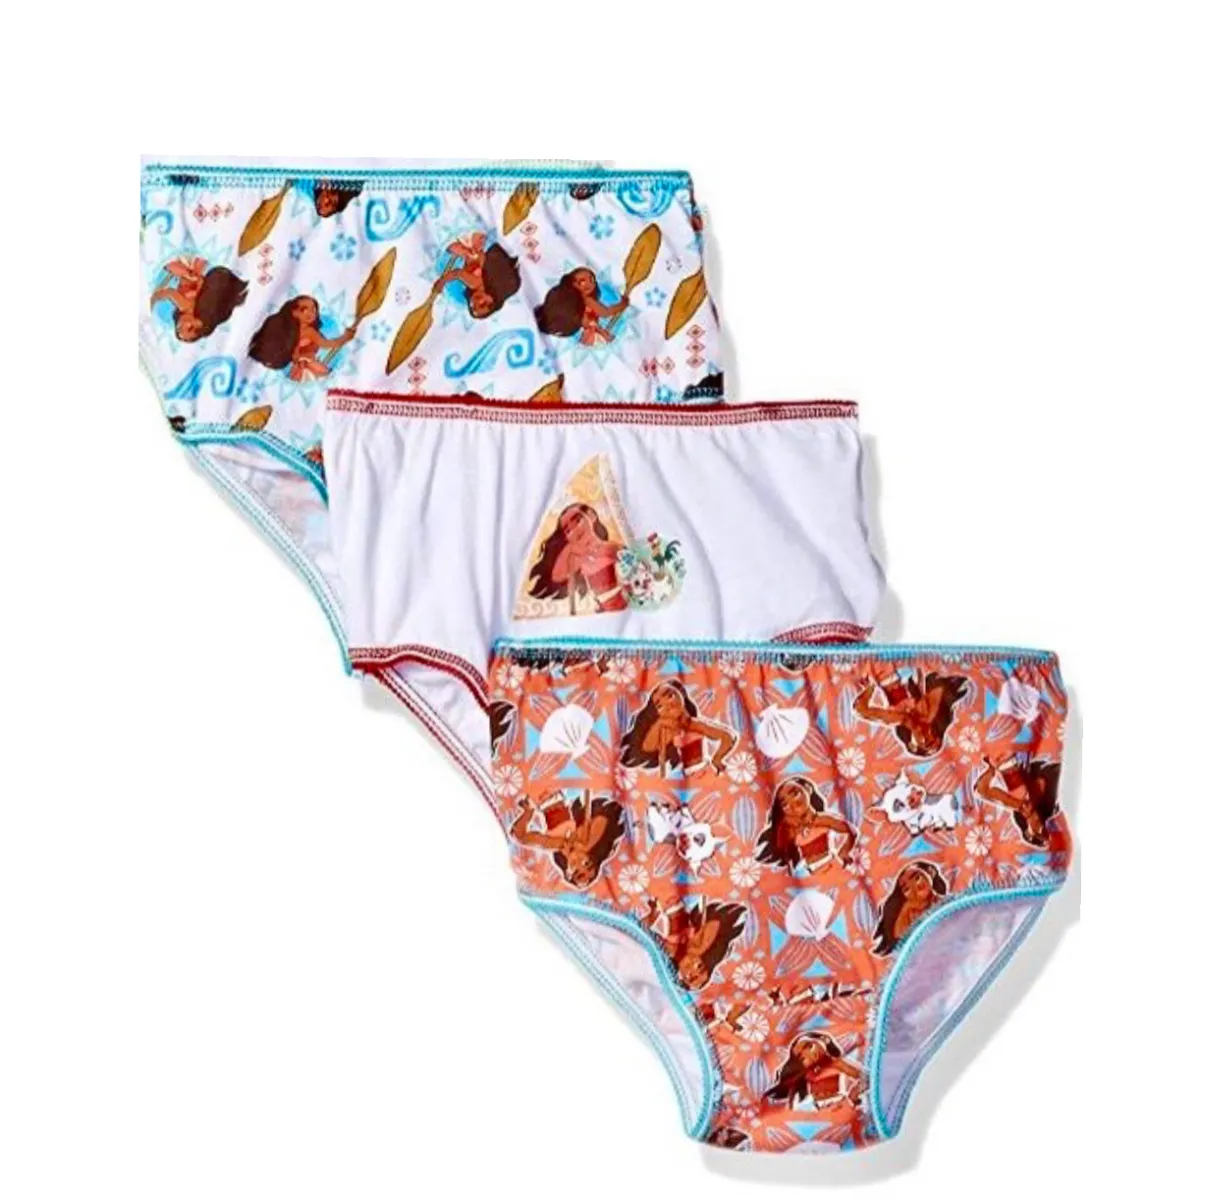 Moana Disney 6 Pack Brief Underwear for Girls 